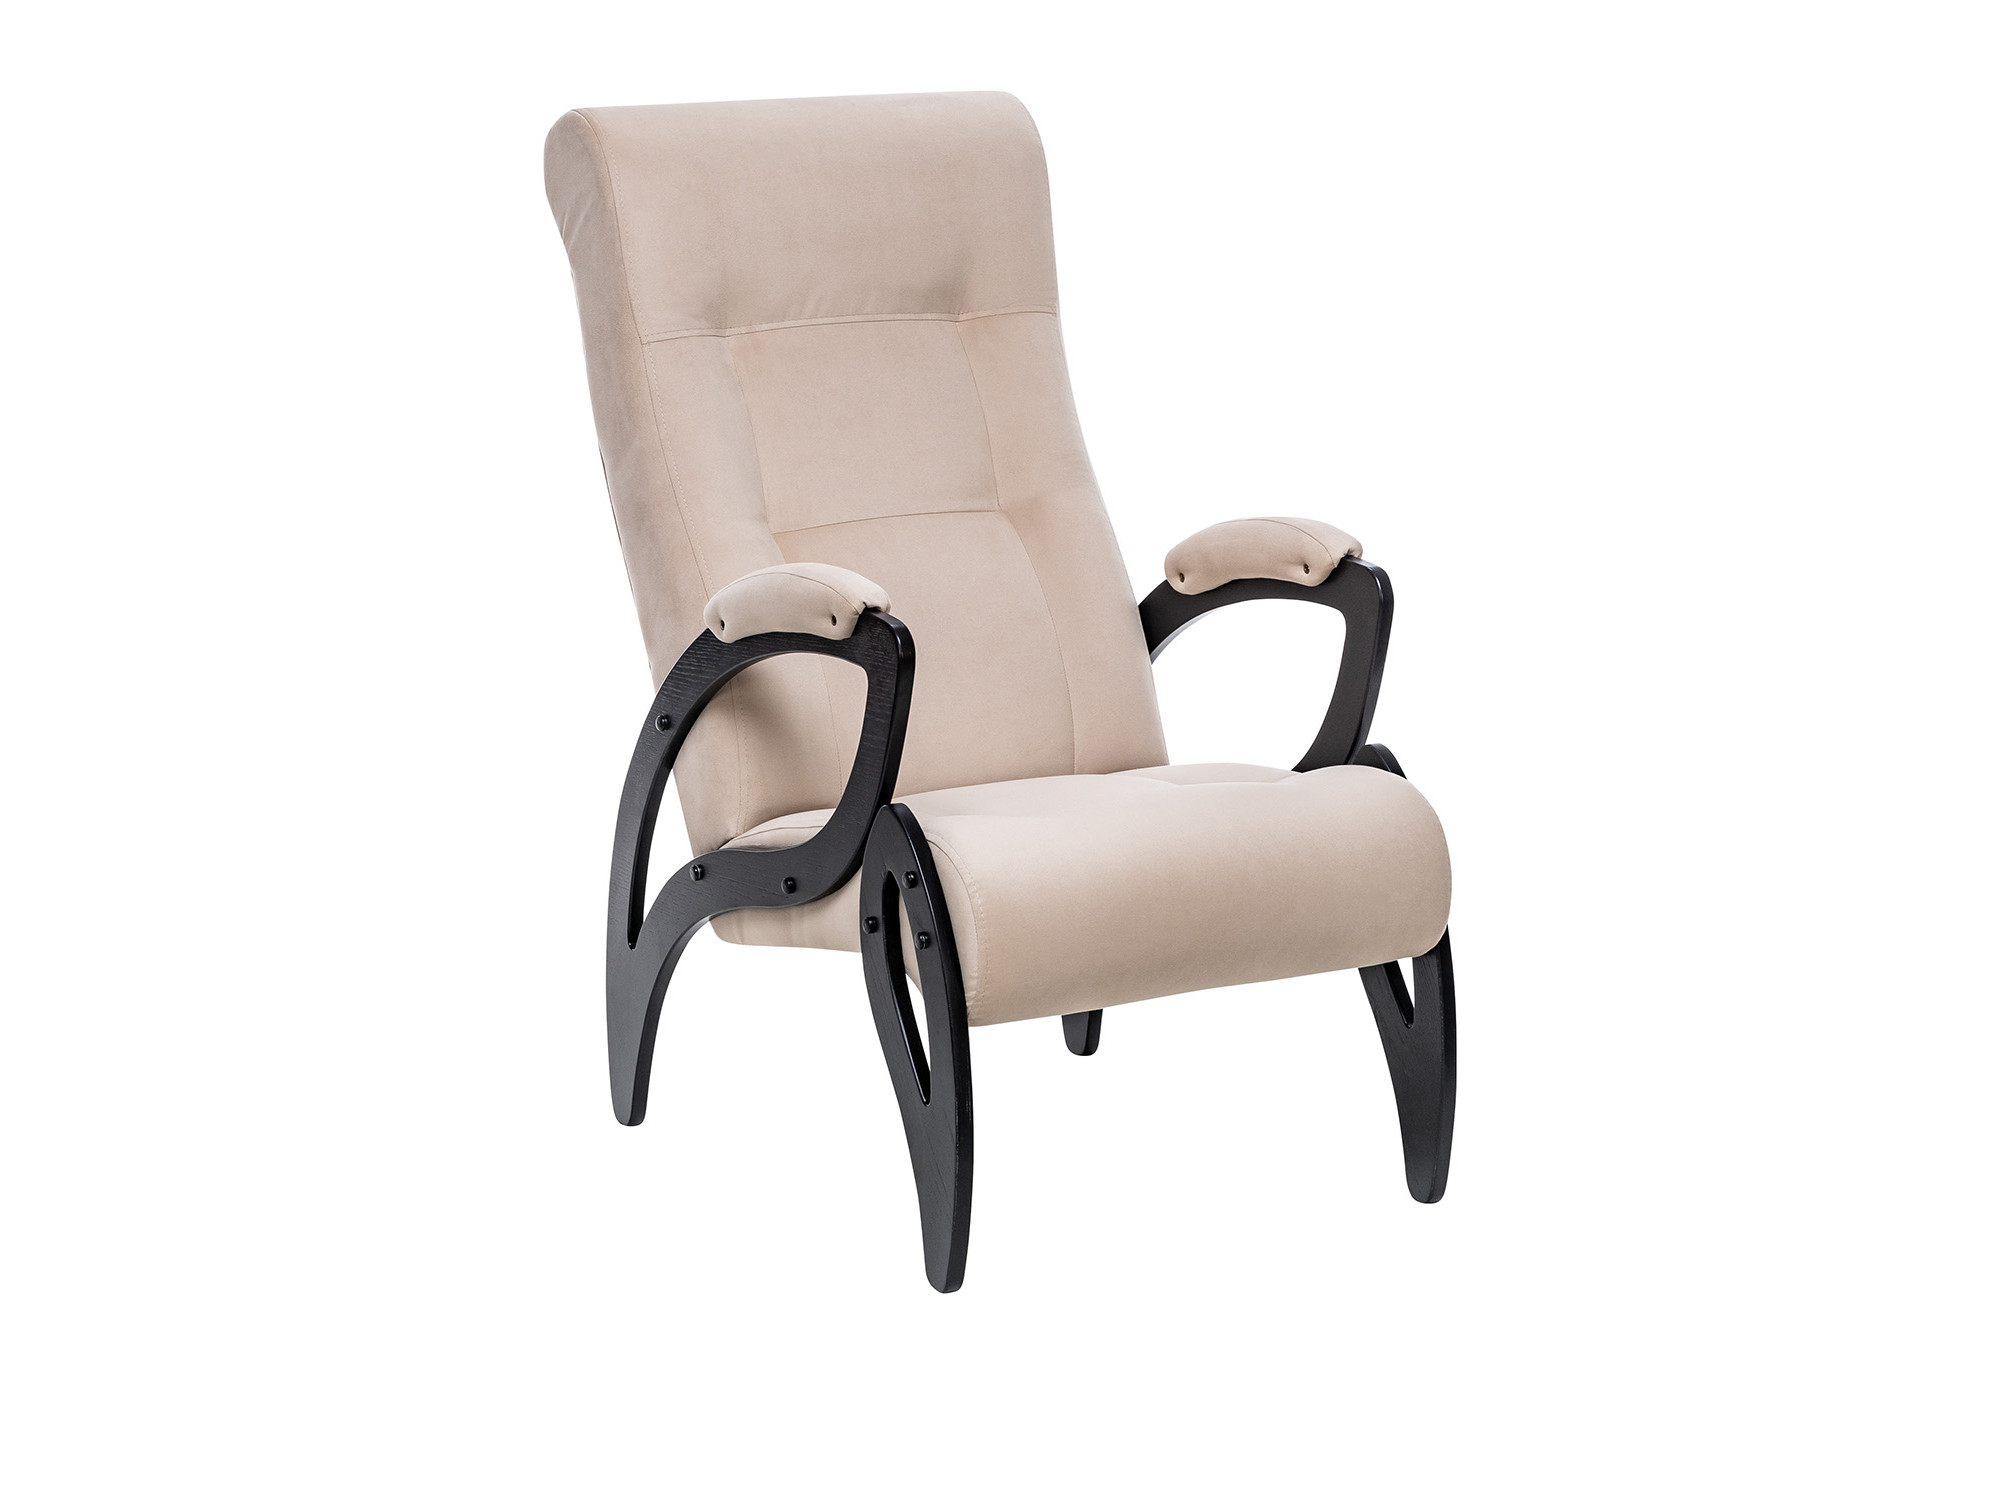 Кресло для отдыха Модель 51 MebelVia V18 бежевый, Ткань Велюр, Шпон, Лак, Фанера кресло качалка модель 67 венге ткань v 18 mebelvia v18 бежевый ткань велюр фанера шпон лак